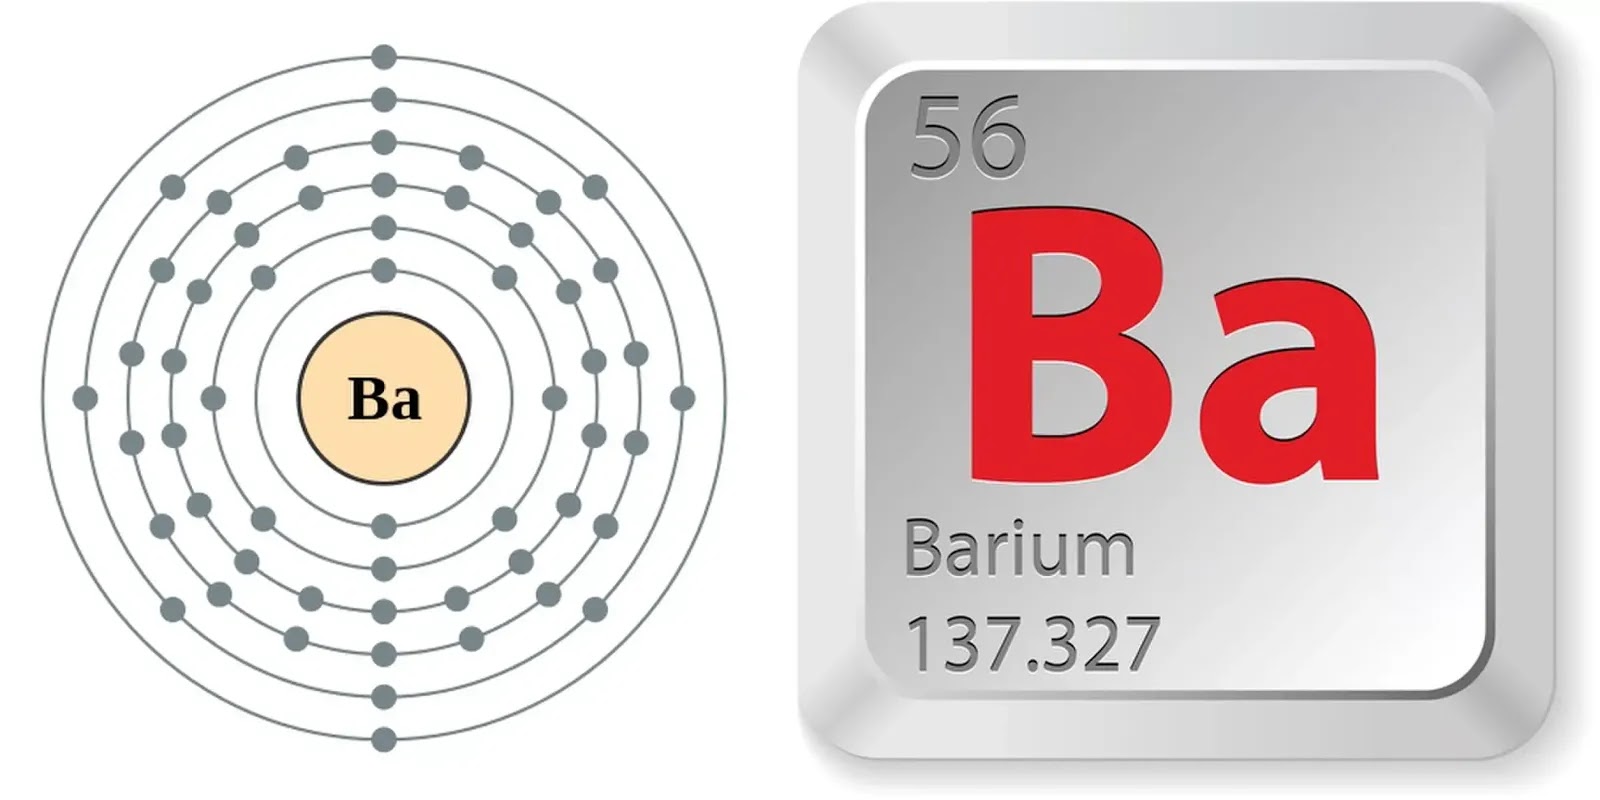 Селен класс. Химические элементы барий Barium. Германий Germanium ge химический элемент. Бром химический элемент. Строение атома элемента германий.